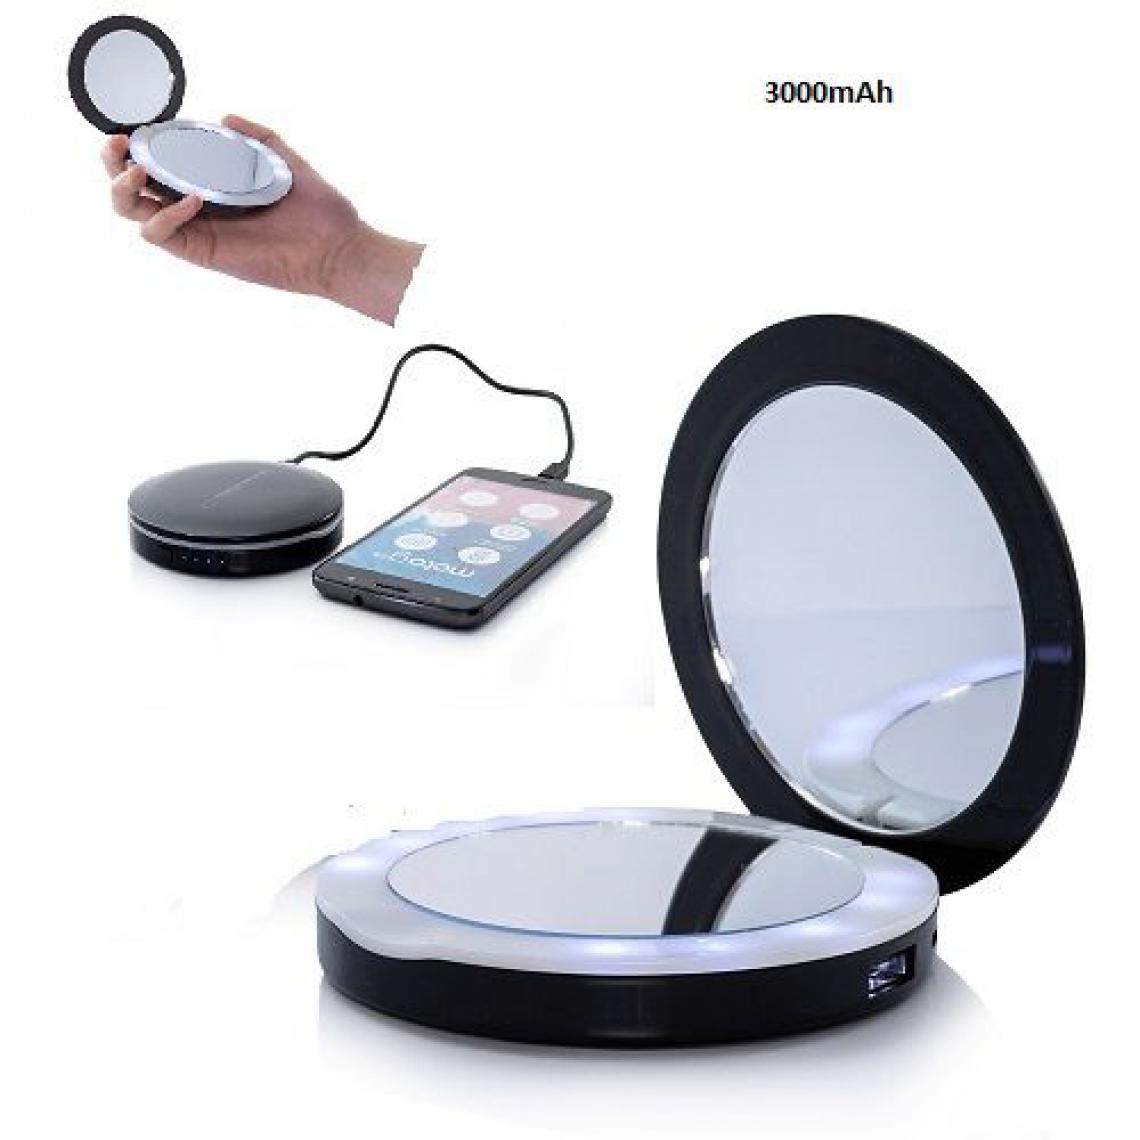 Ozzzo - Chargeur batterie externe miroir led 3000mAh ozzzo noir pour Chuwi Hi9 Pro - Autres accessoires smartphone